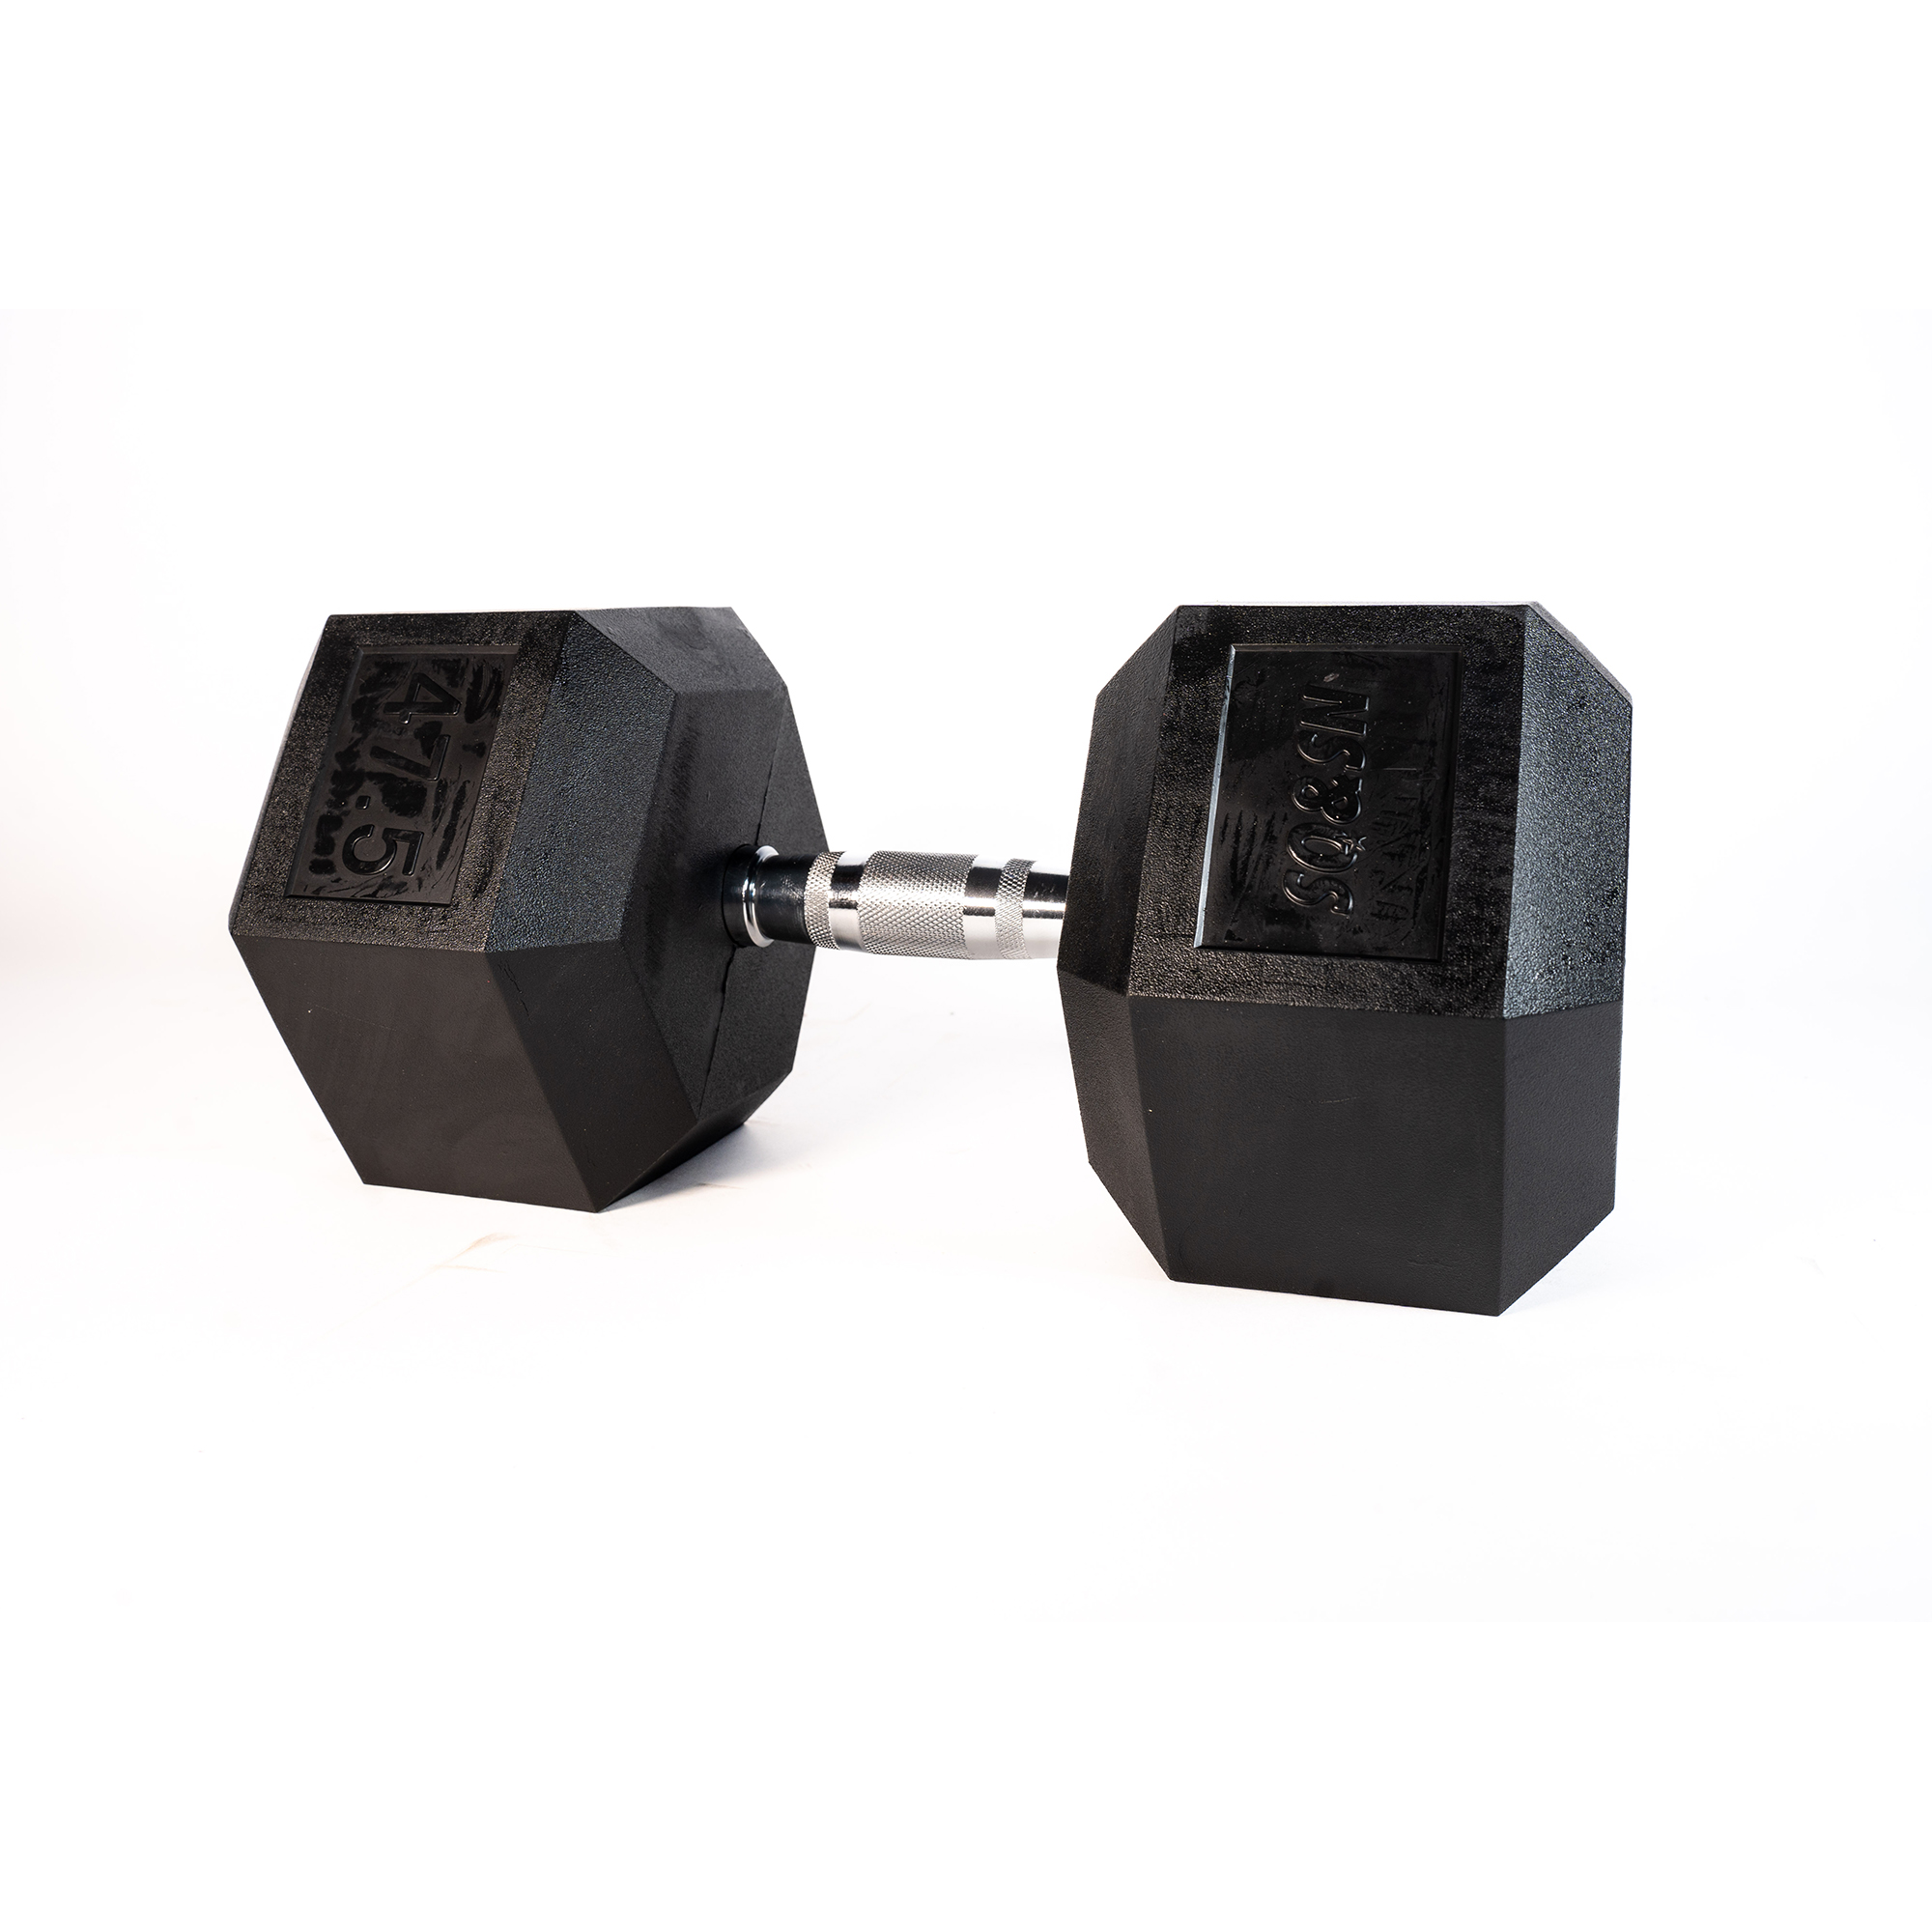 Brug SQ&SN Hexagon Håndvægt (47,5 kg) med forkromet greb. Udstyr til crossfit træning, styrketræning og funktionel træning til en forbedret oplevelse